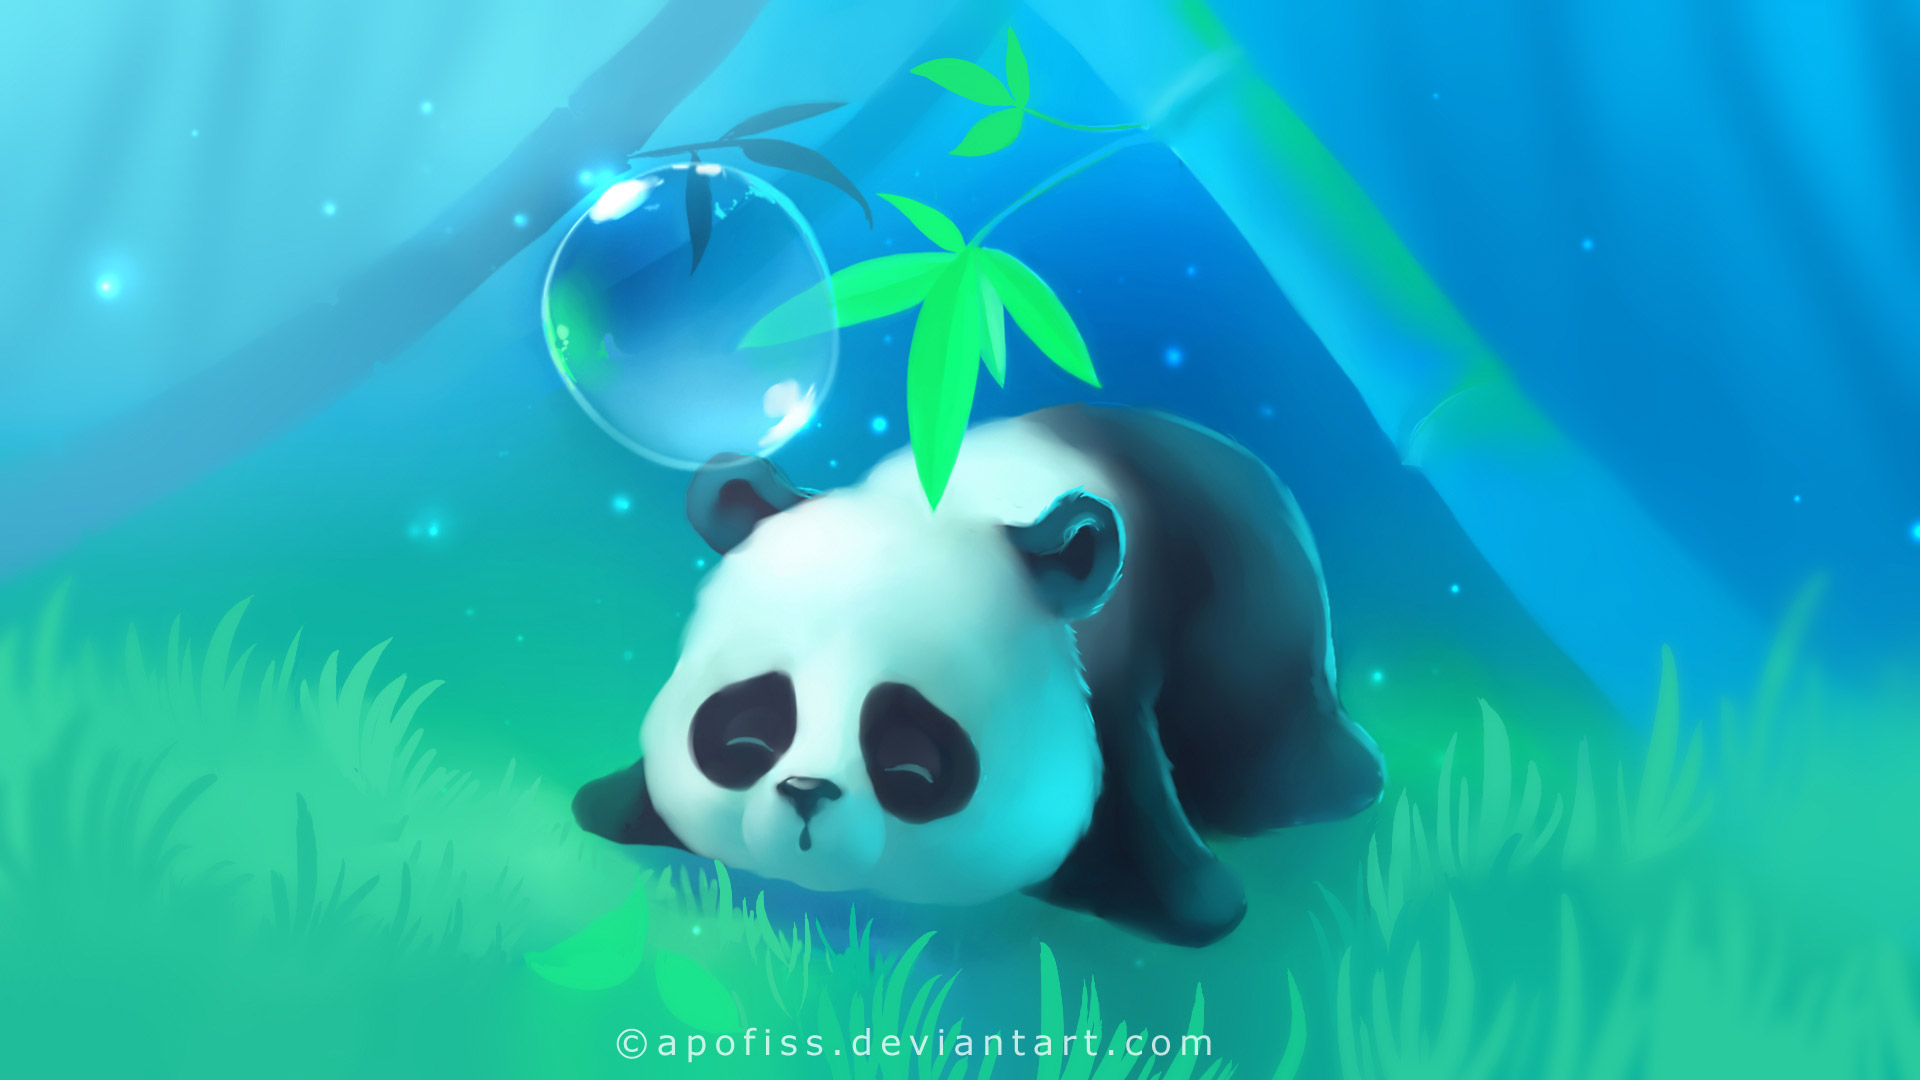 Baby Panda by Manu on Dribbble